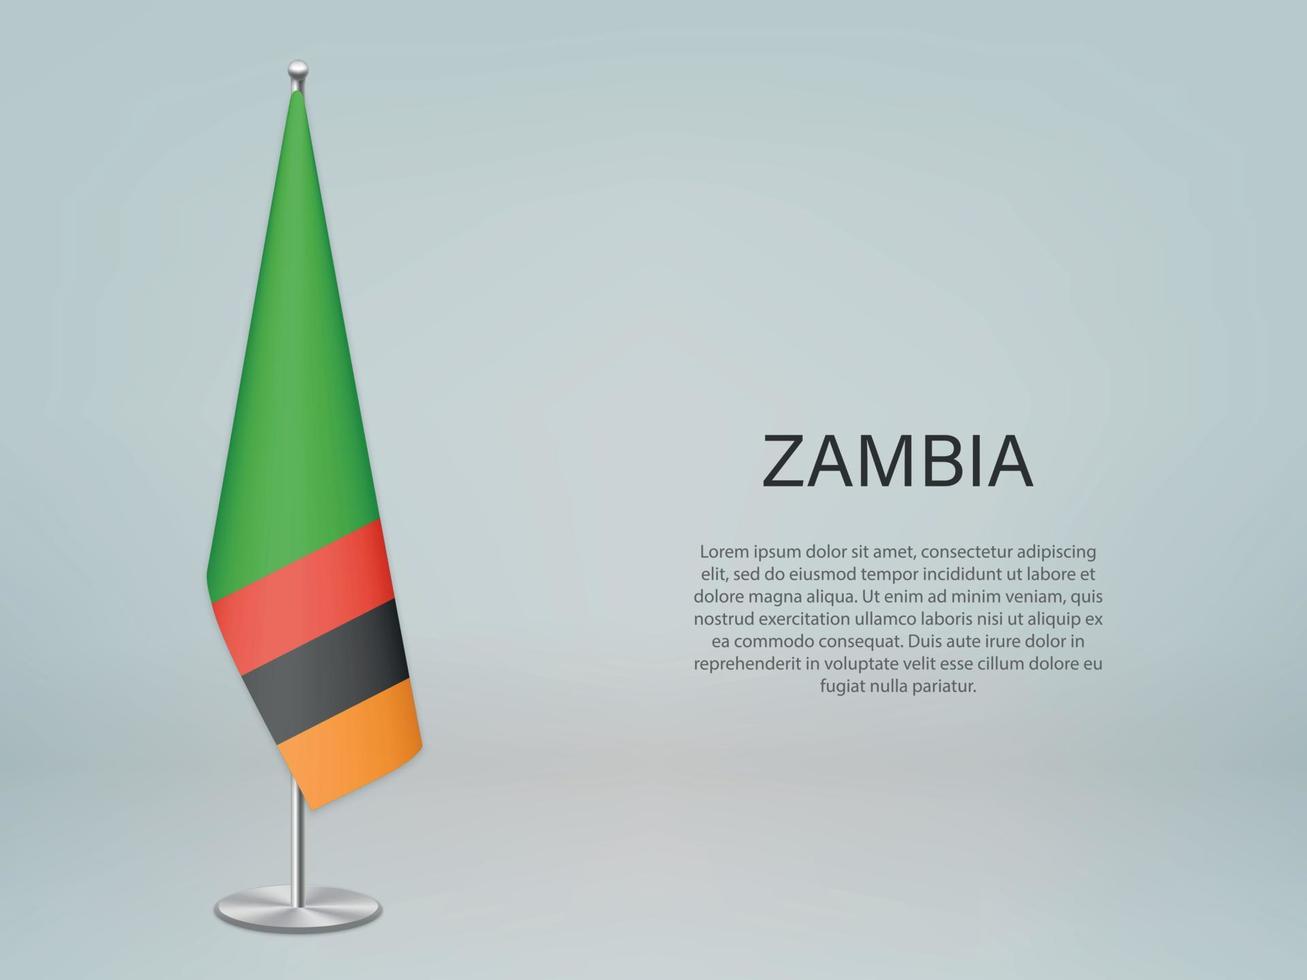 Sambia hängende Flagge auf dem Ständer. Vorlage für Konferenzbanner vektor